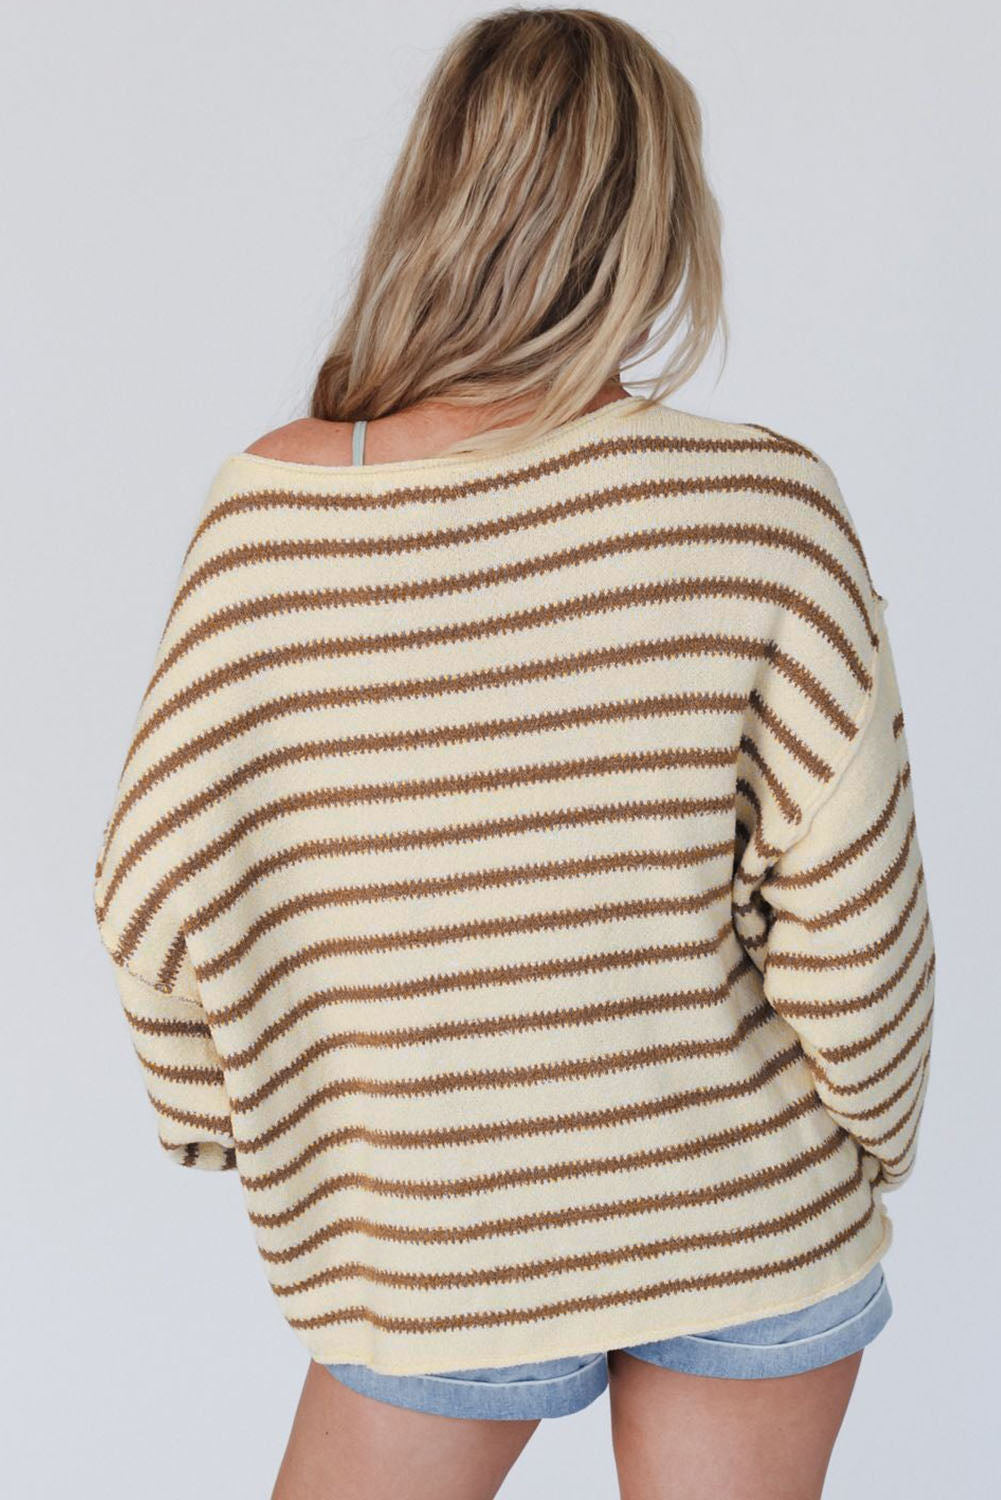 Kealey Sweater